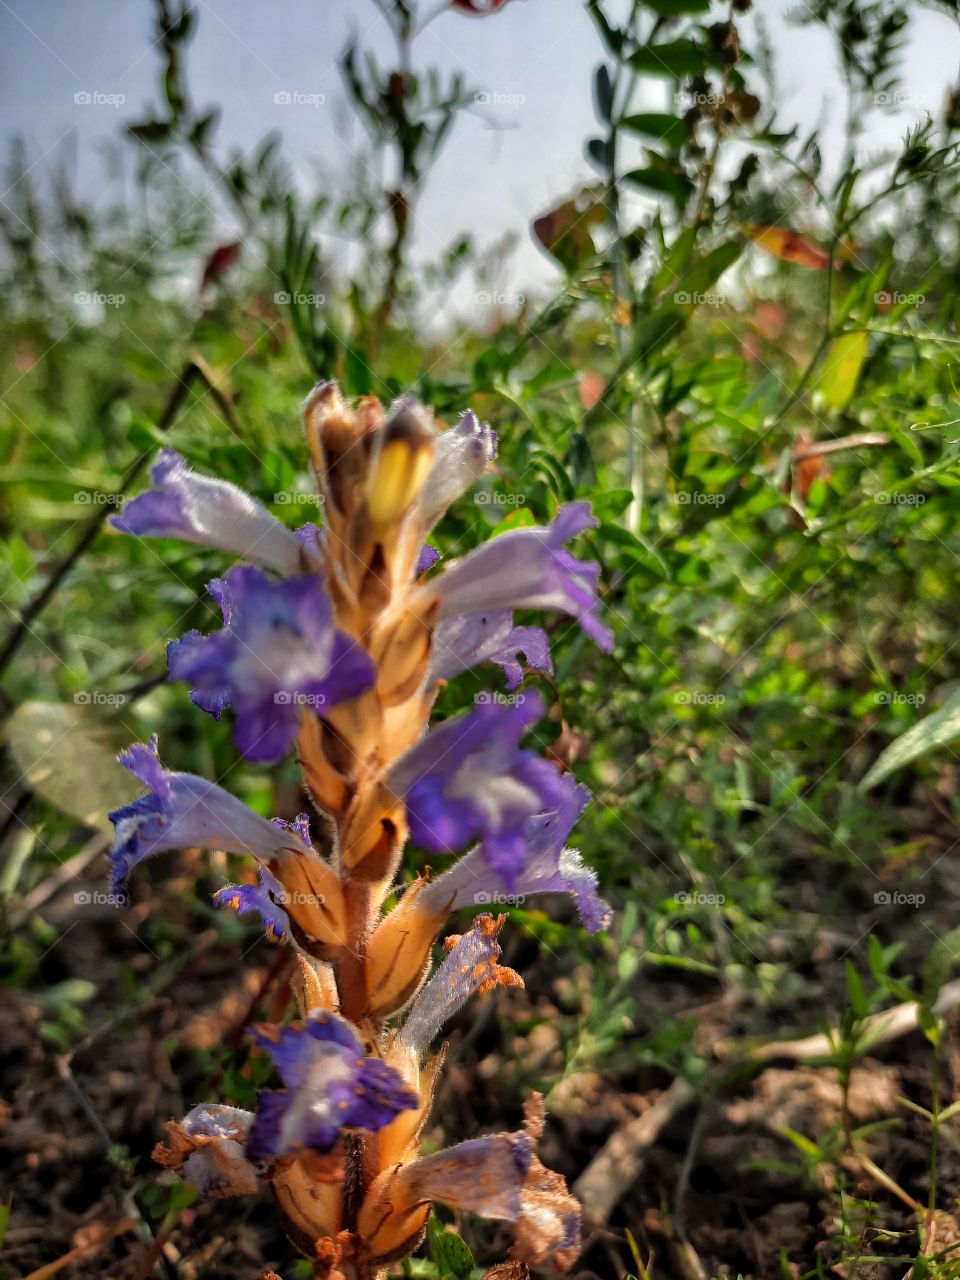 pretty flower in the fields